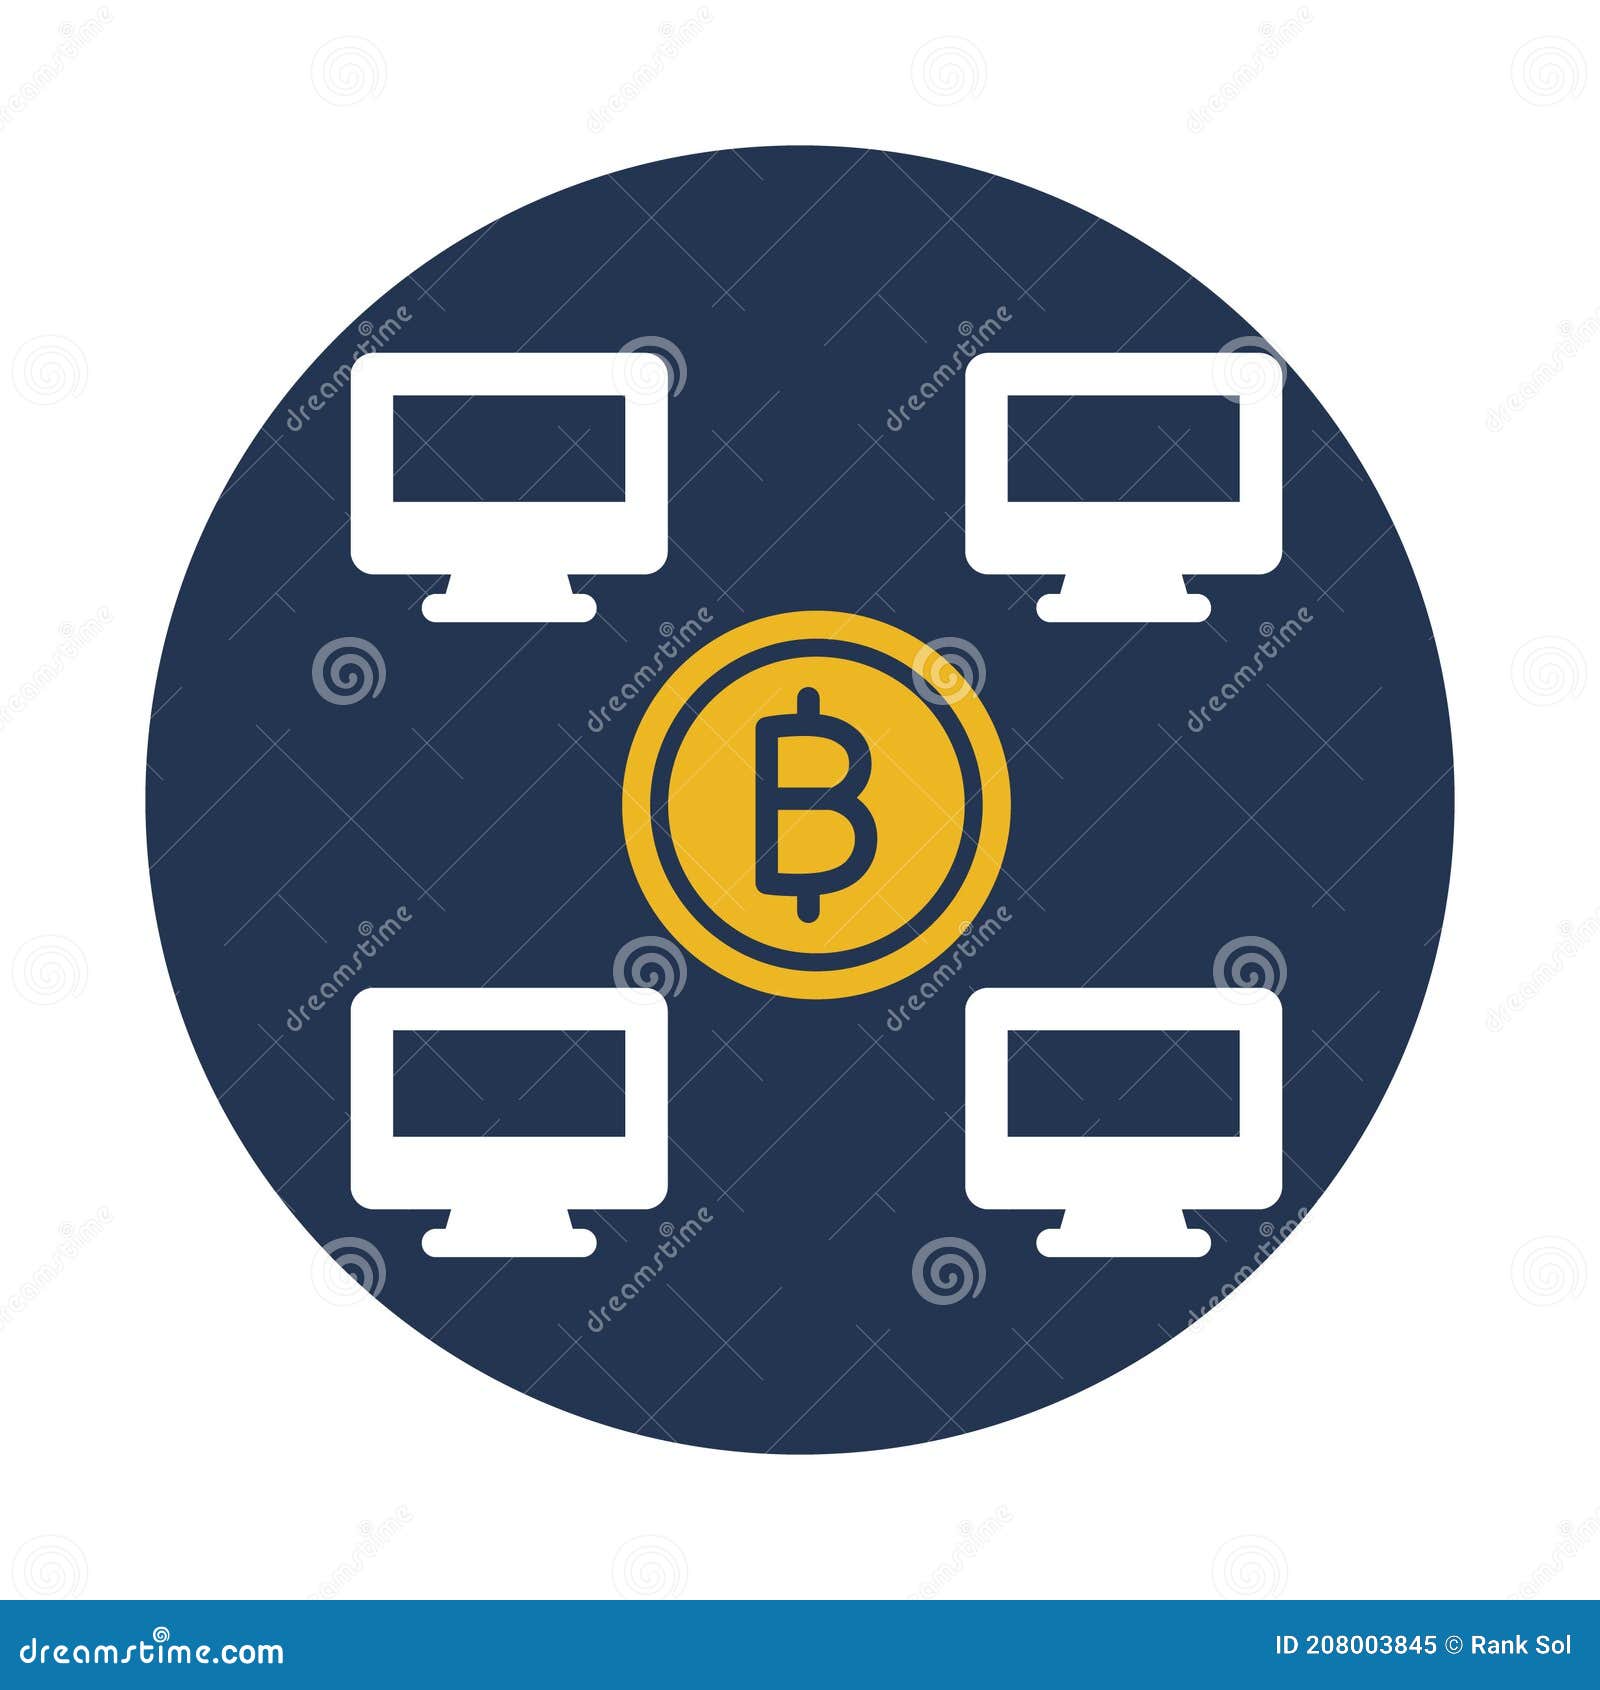 Bitcoin monitorings